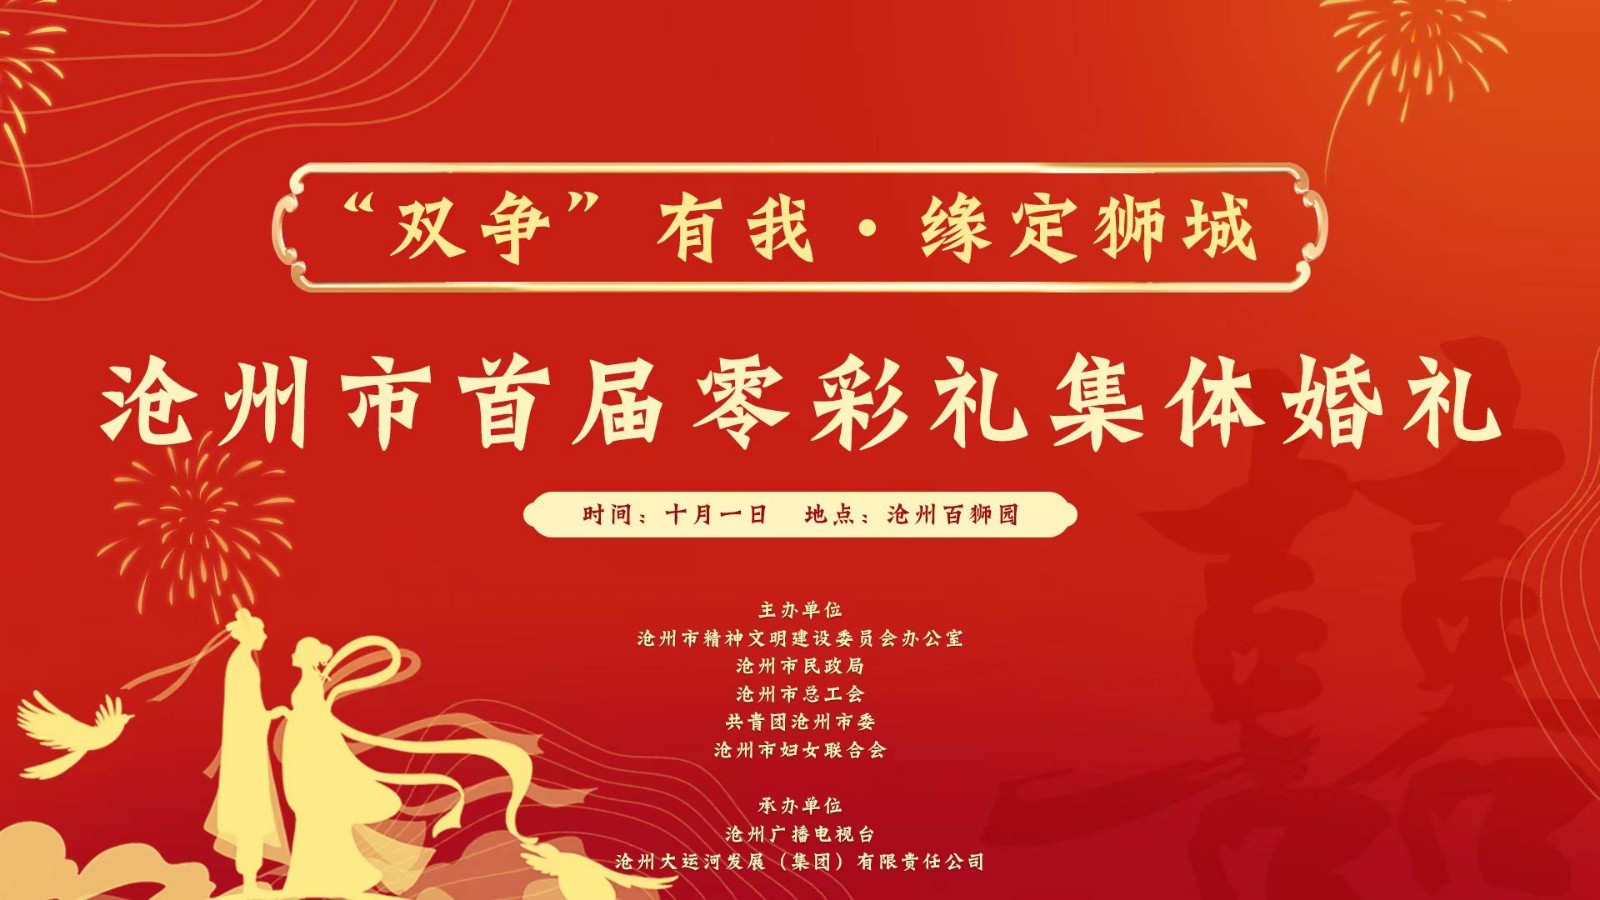 “‘双争’有我·缘定狮城”沧州市首届零彩礼集体婚礼